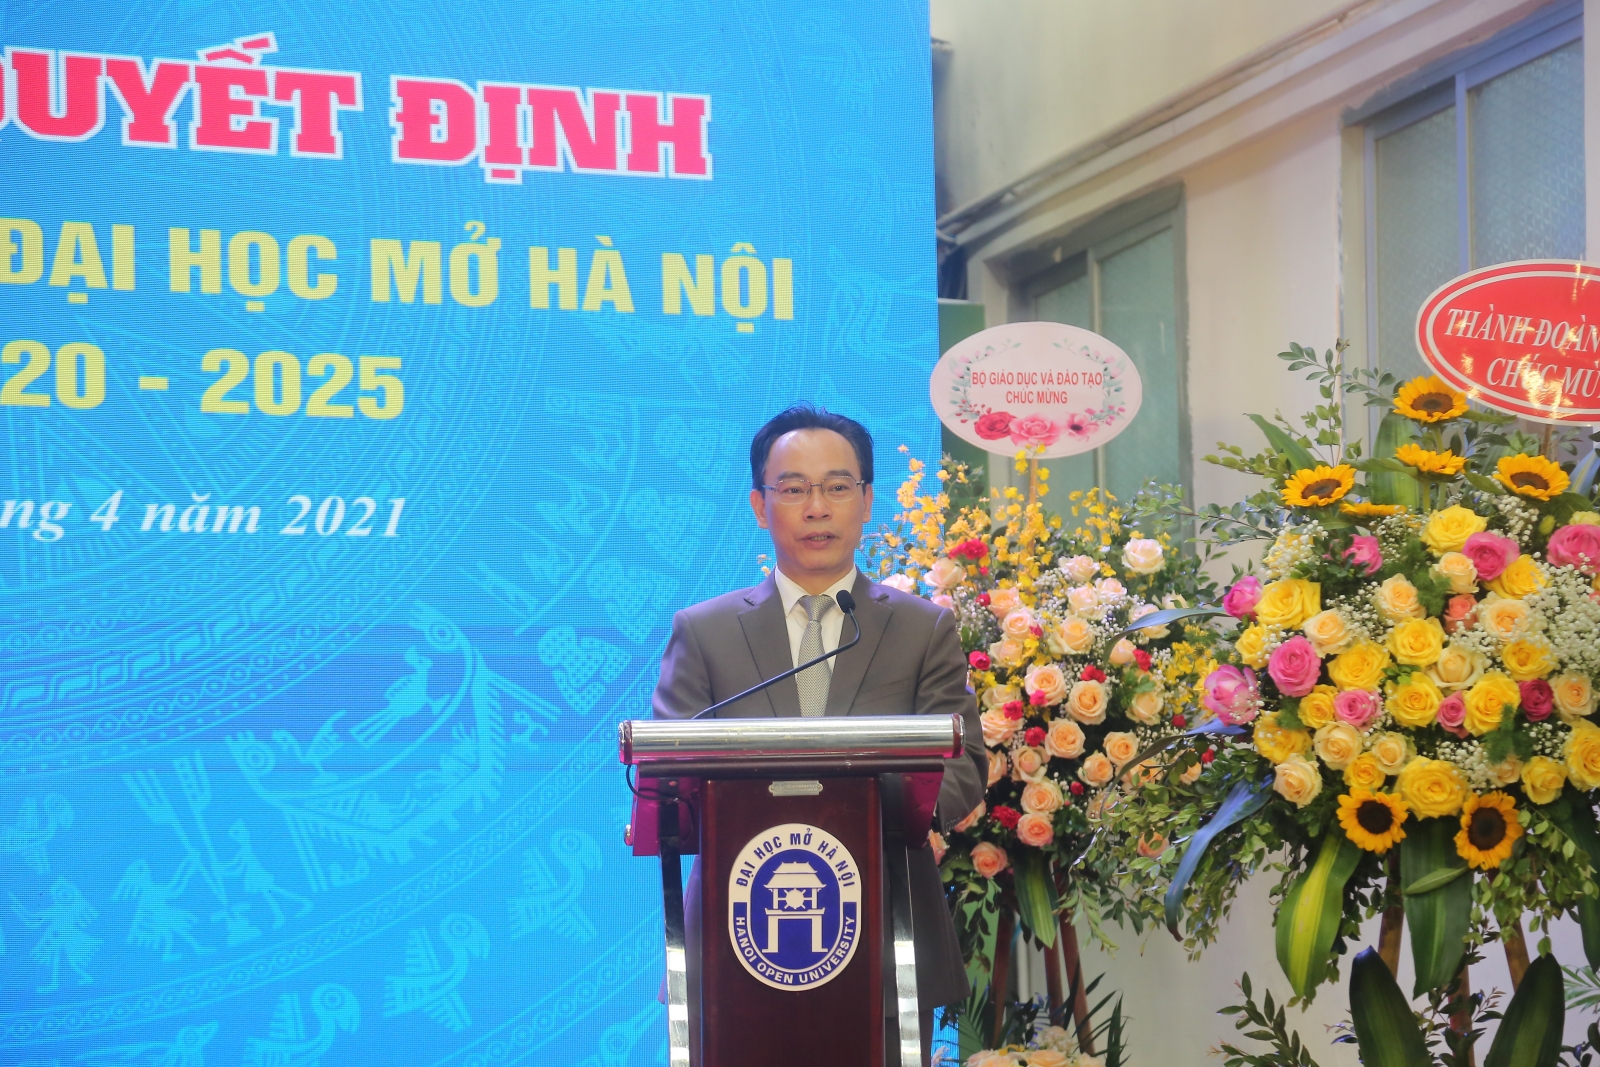 PGS.TS Nguyễn Thị Nhung là tân hiệu trưởng Trường ĐH Mở Hà Nội - Ảnh minh hoạ 4